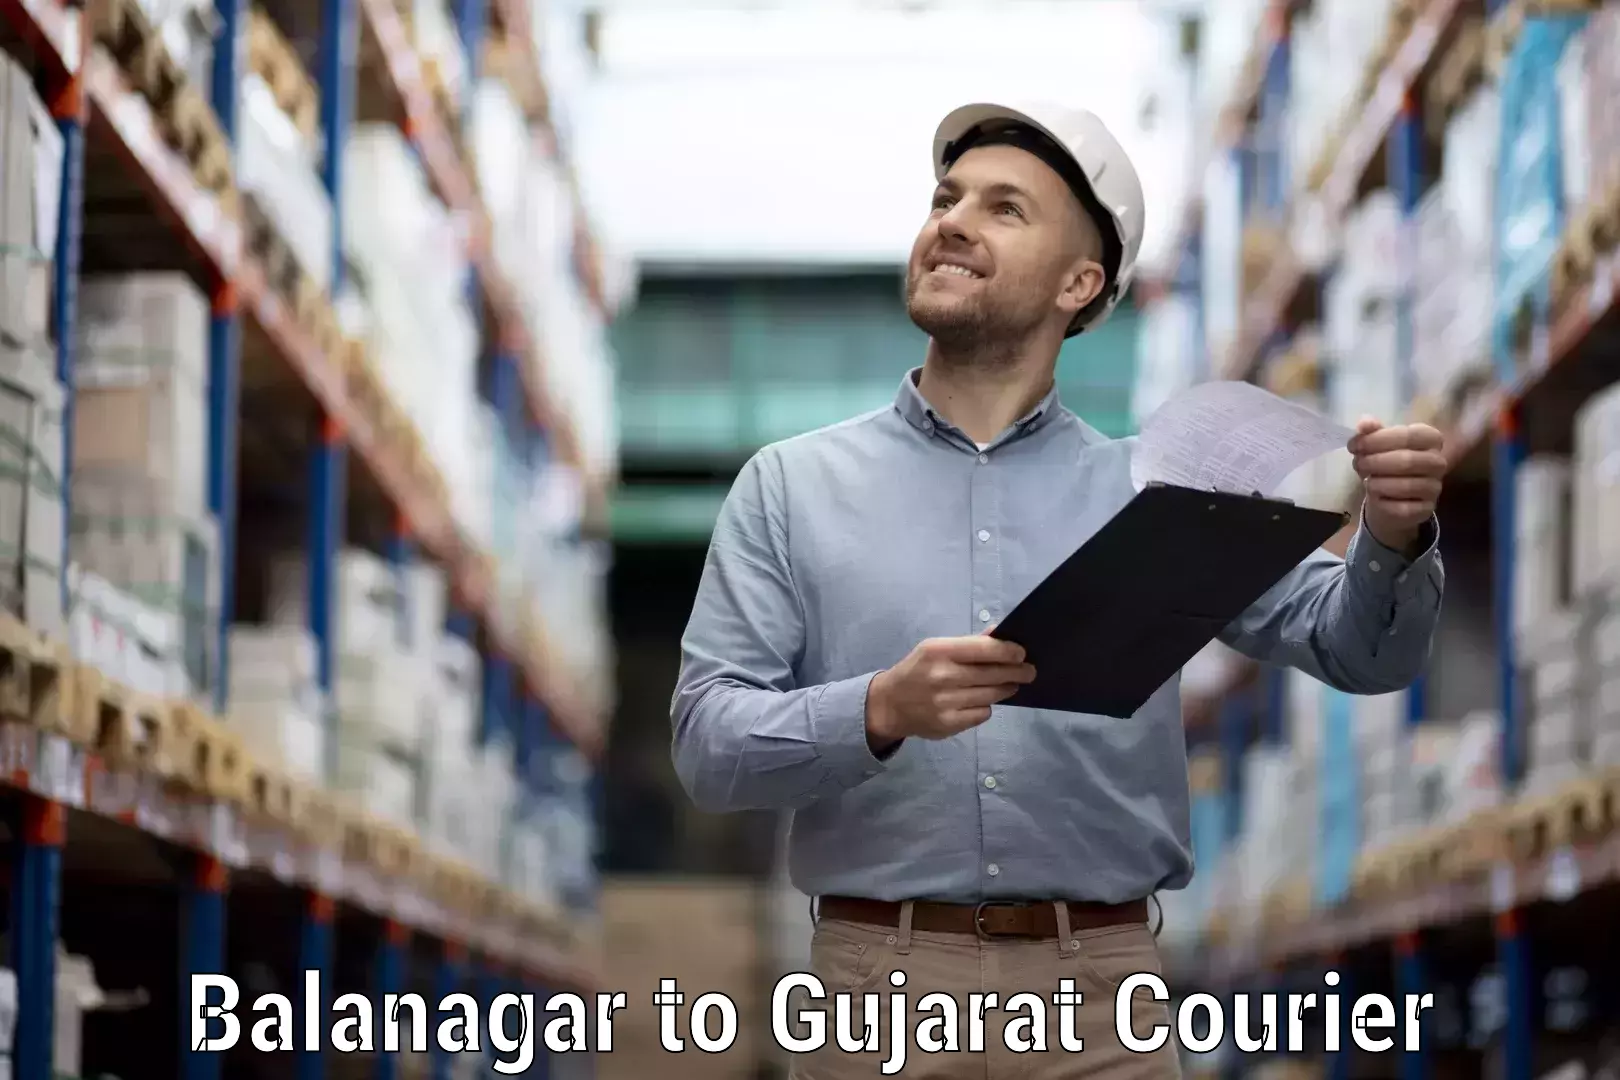 Flexible shipping options in Balanagar to Songadh